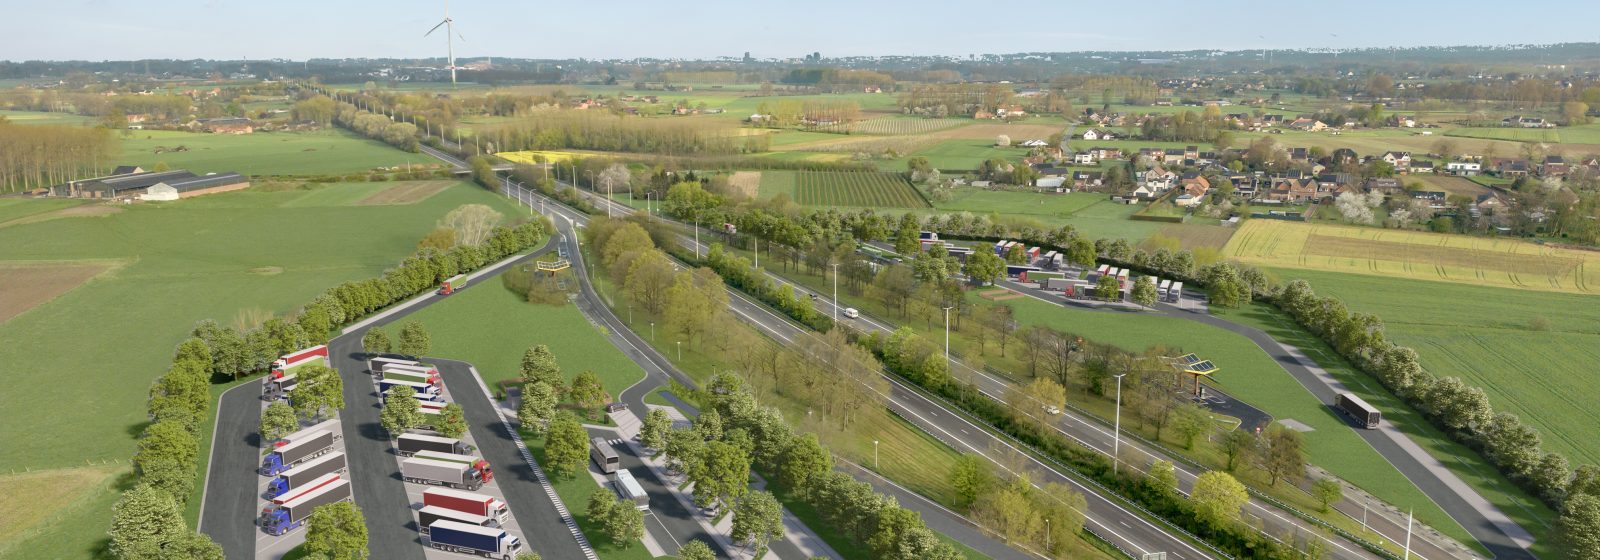 3D-visualisatie van de toekomstige vernieuwing en uitbreiding van de snelwegparkings Diepenbeek